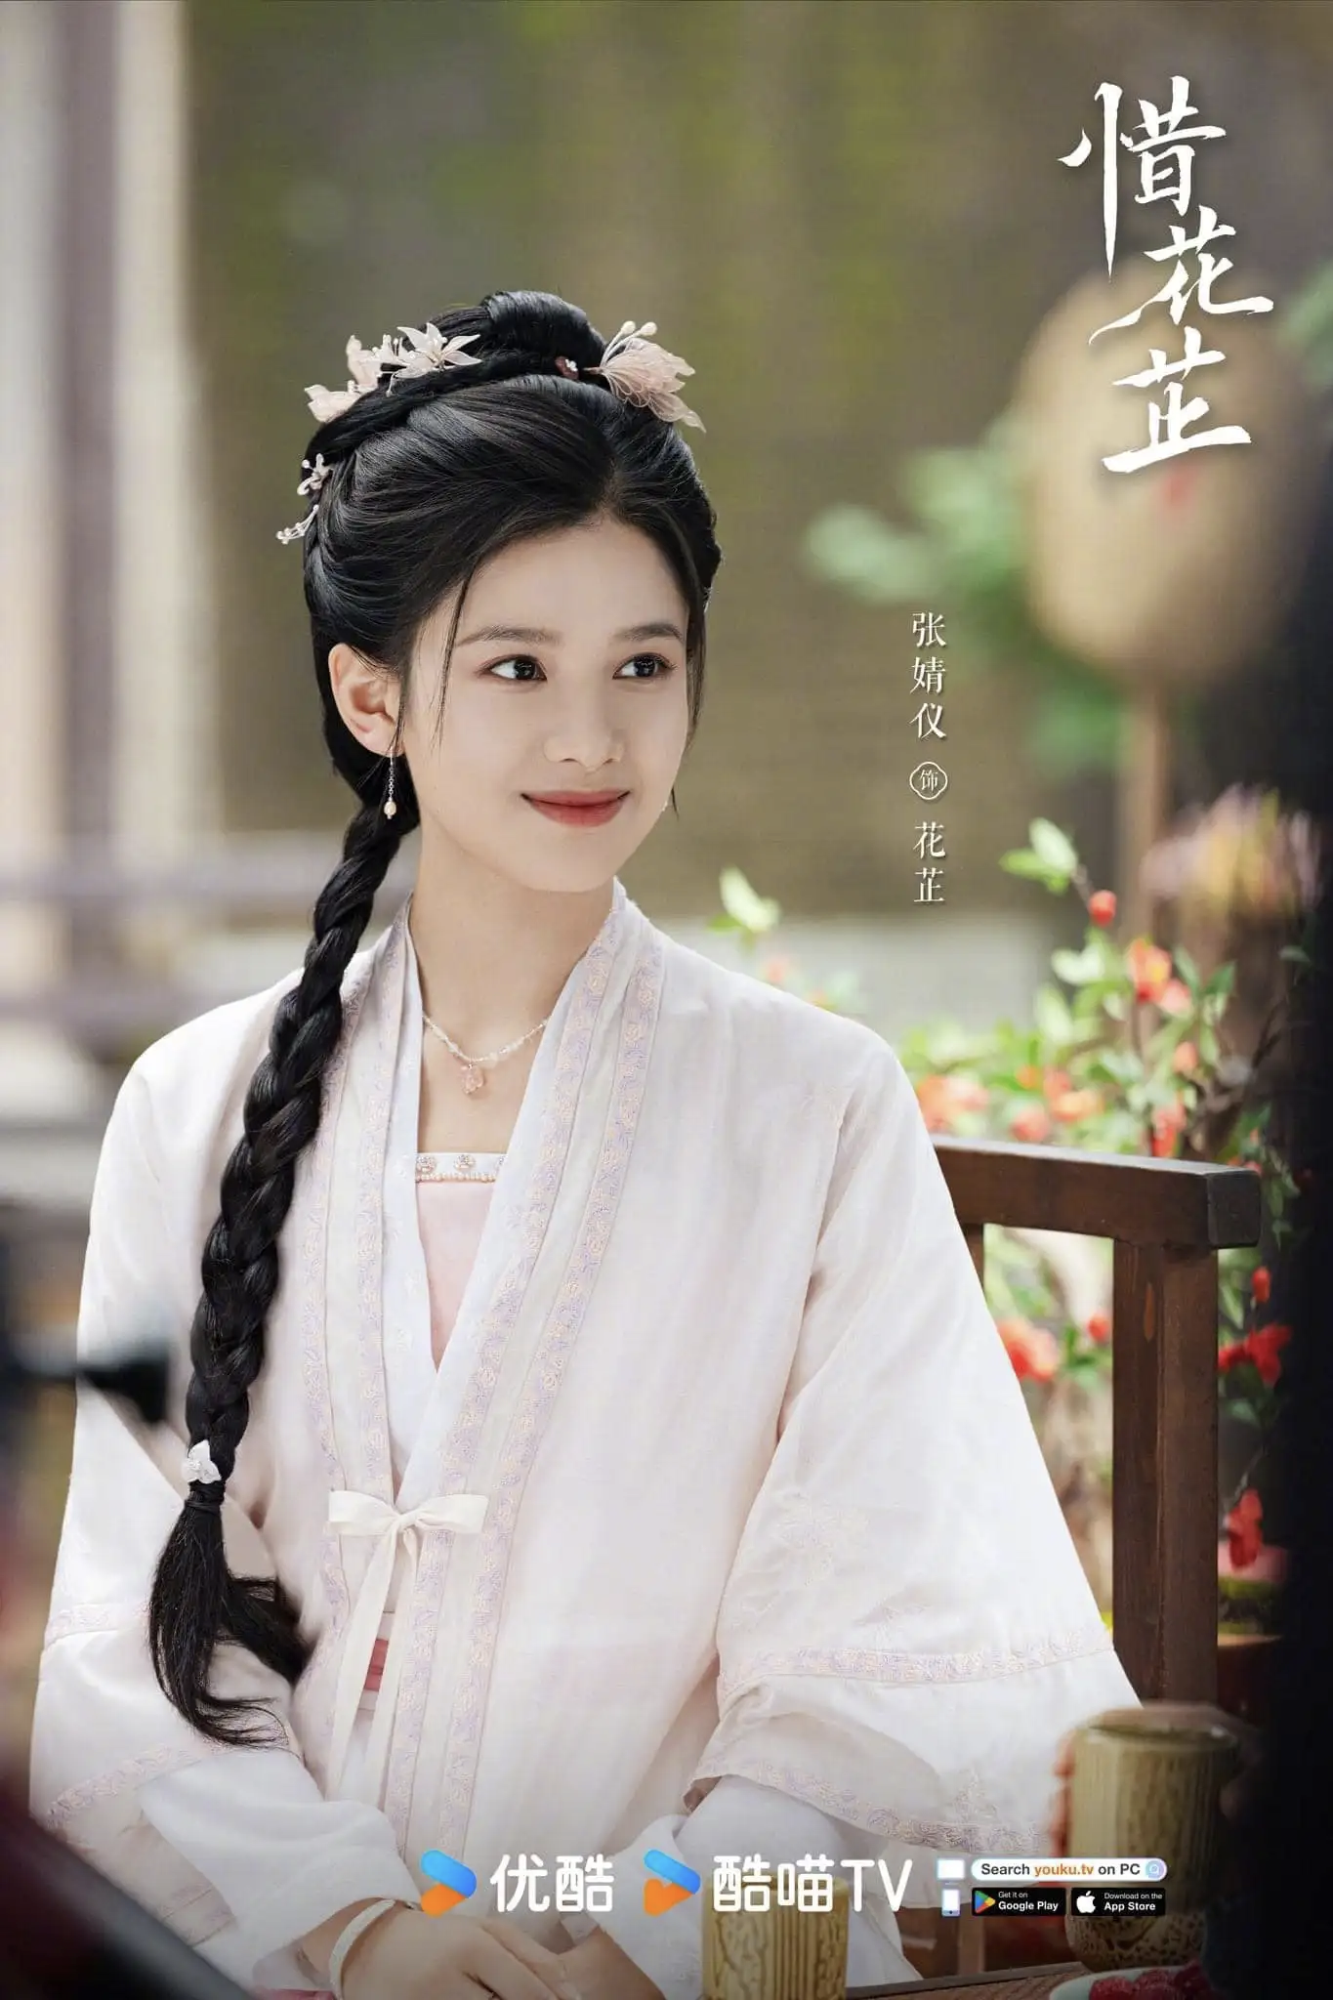 'Con cưng' của Châu Tấn xuất hiện như nữ tổng tài, vẻ đẹp 'tình đầu màn ảnh' sáng bừng từng khung hình - Ảnh 3